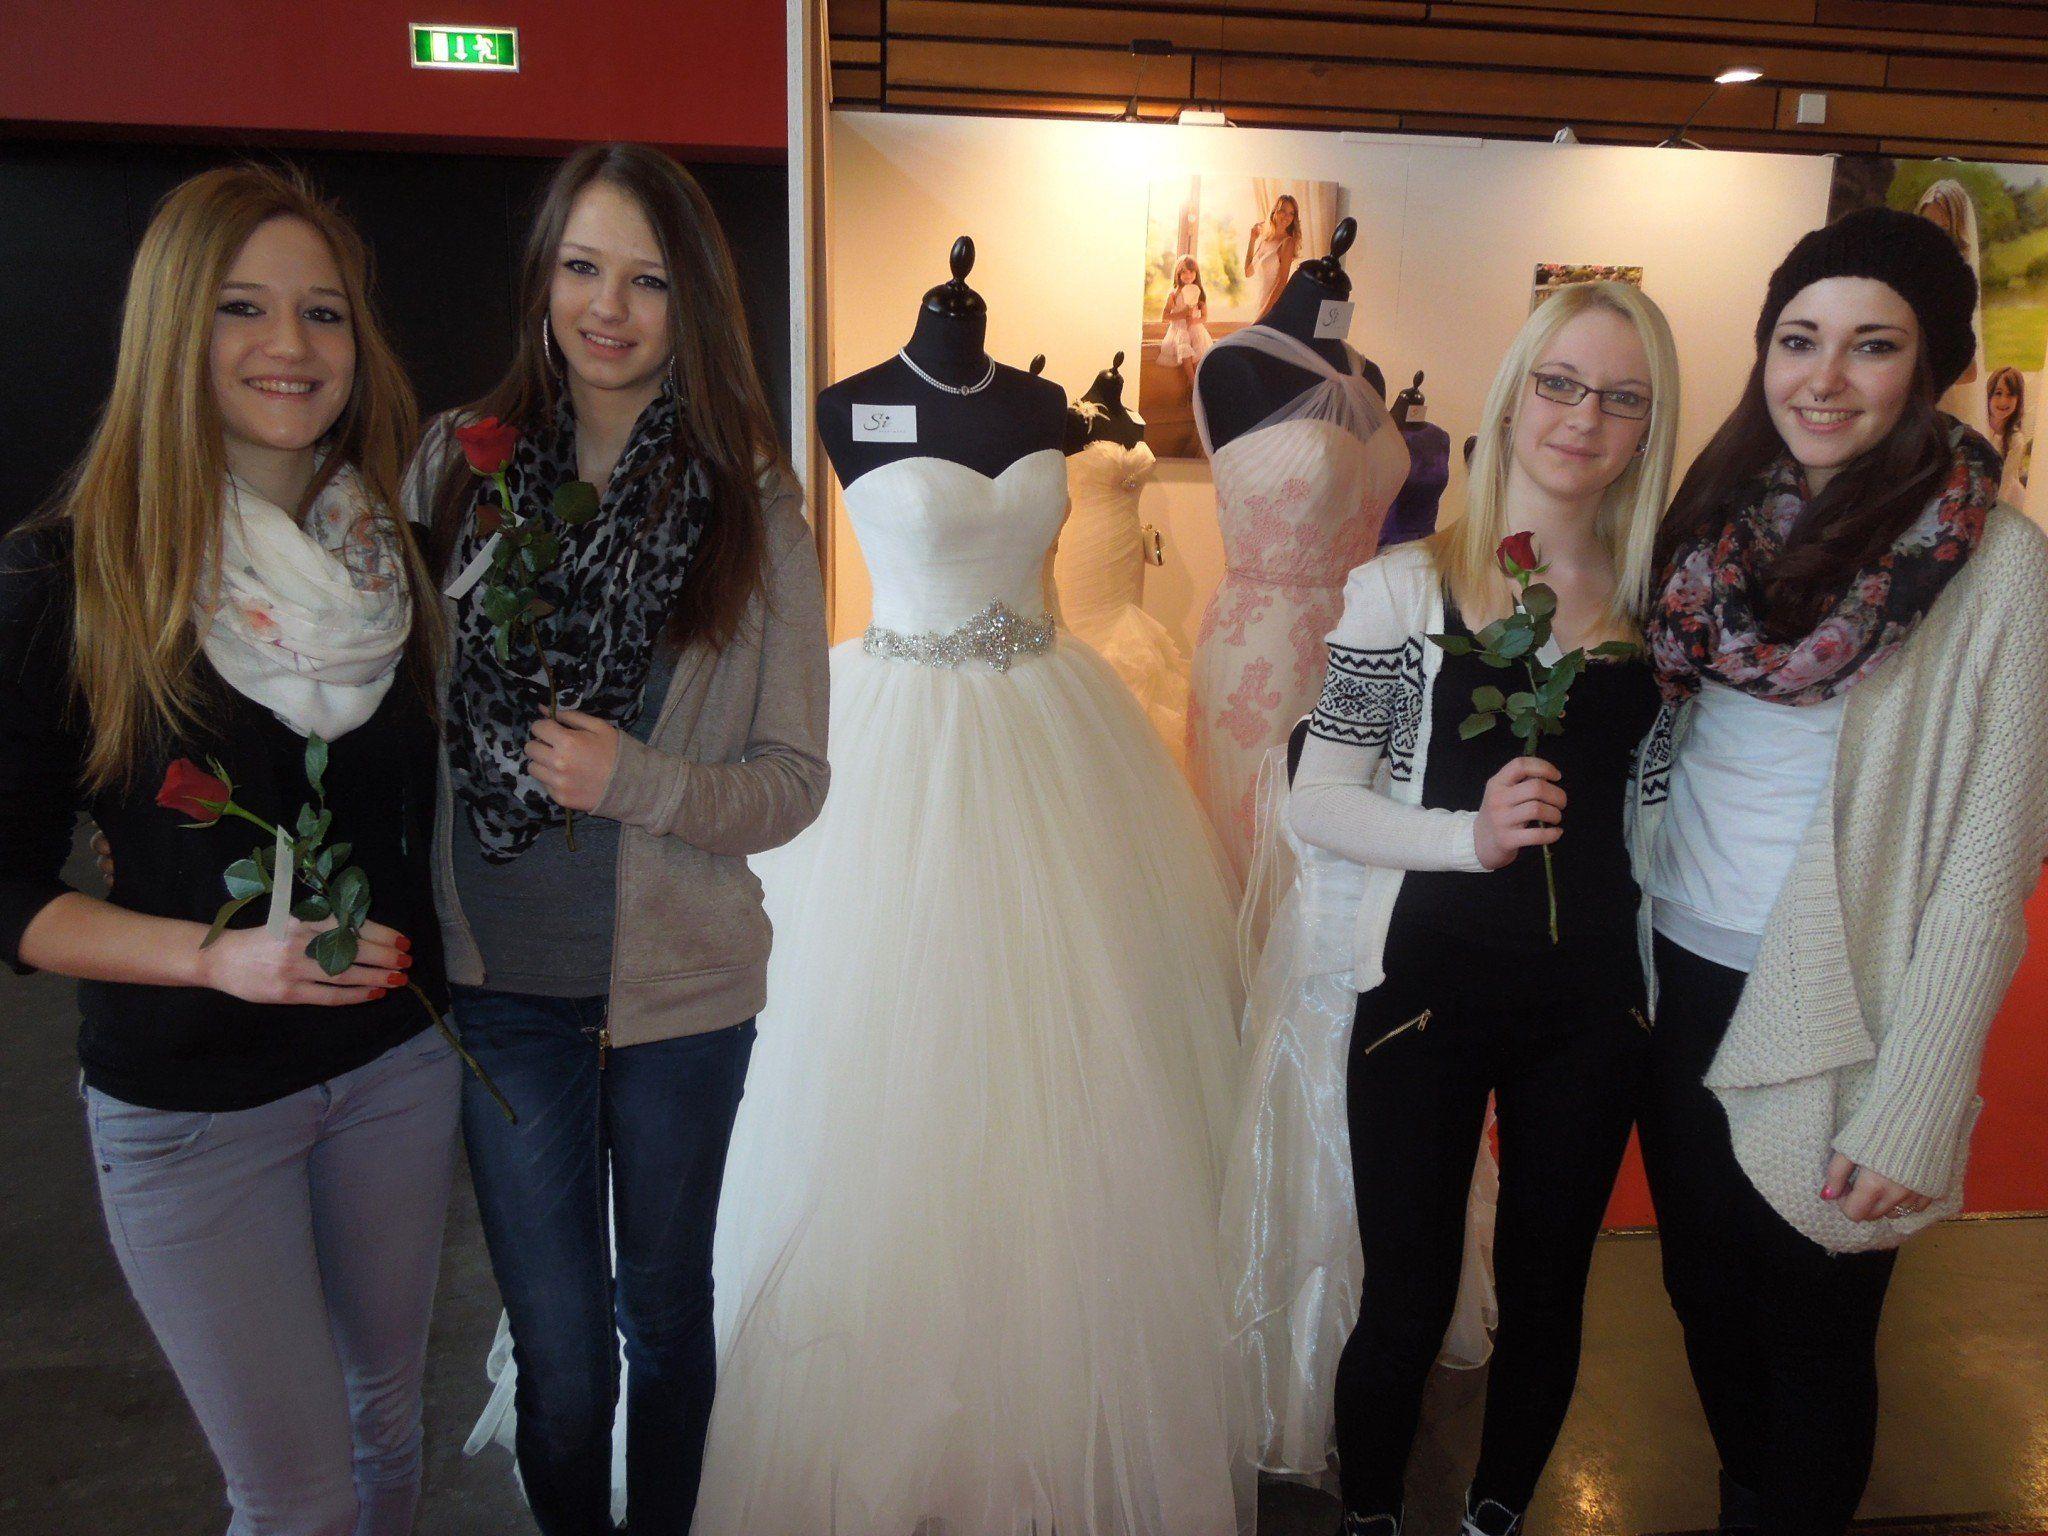 Anna, Sarah, Sandra und Ornella fanden ihr persönliches Traumkleid bei der Hochzeitsmesse vergangenen Sonntag.